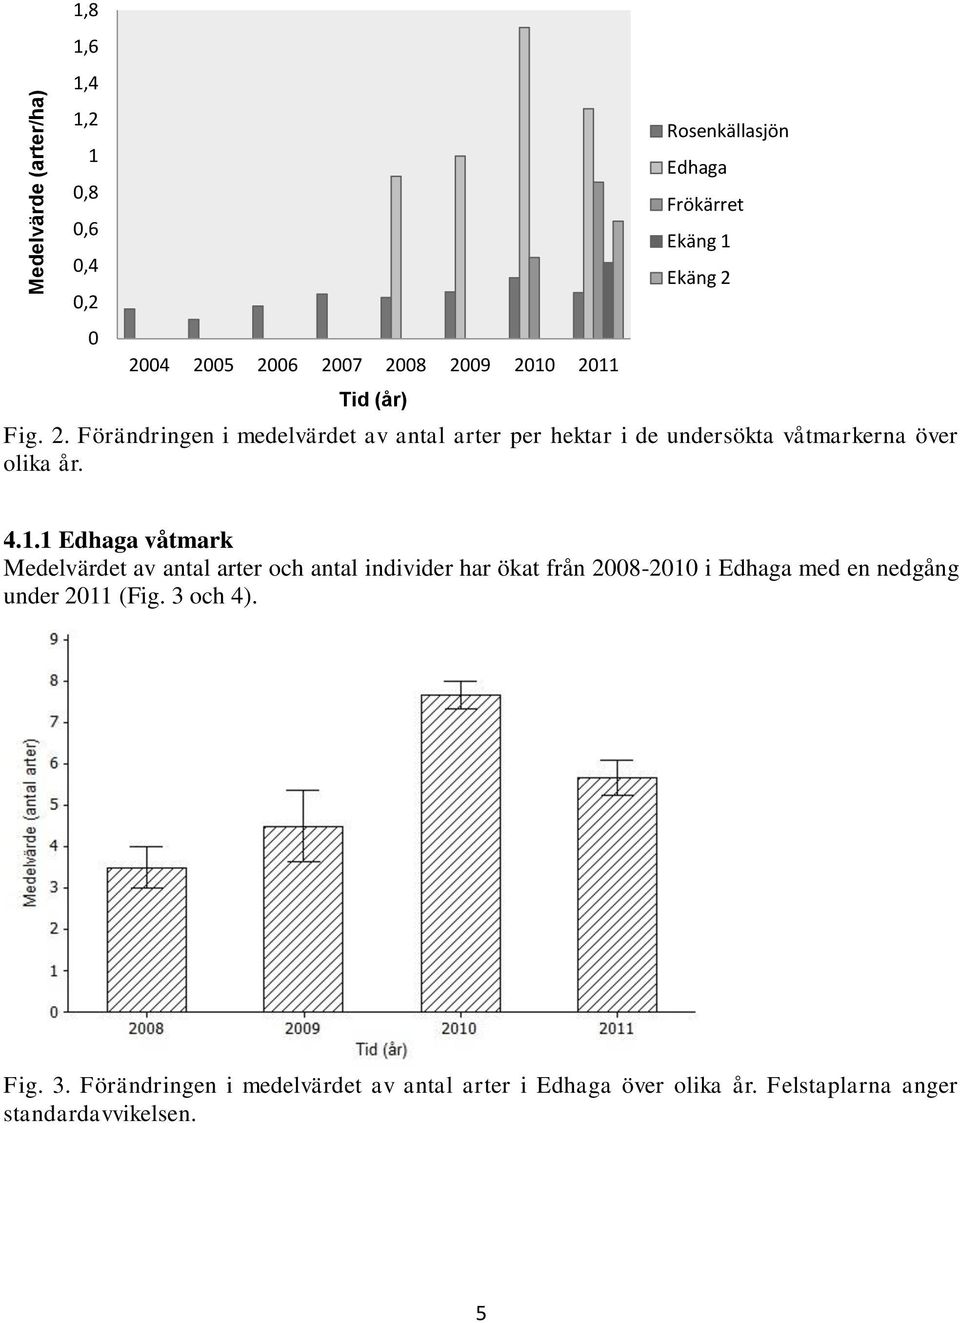 4.1.1 Edhaga våtmark Medelvärdet av antal arter och antal individer har ökat från 2008-2010 i Edhaga med en nedgång under 2011